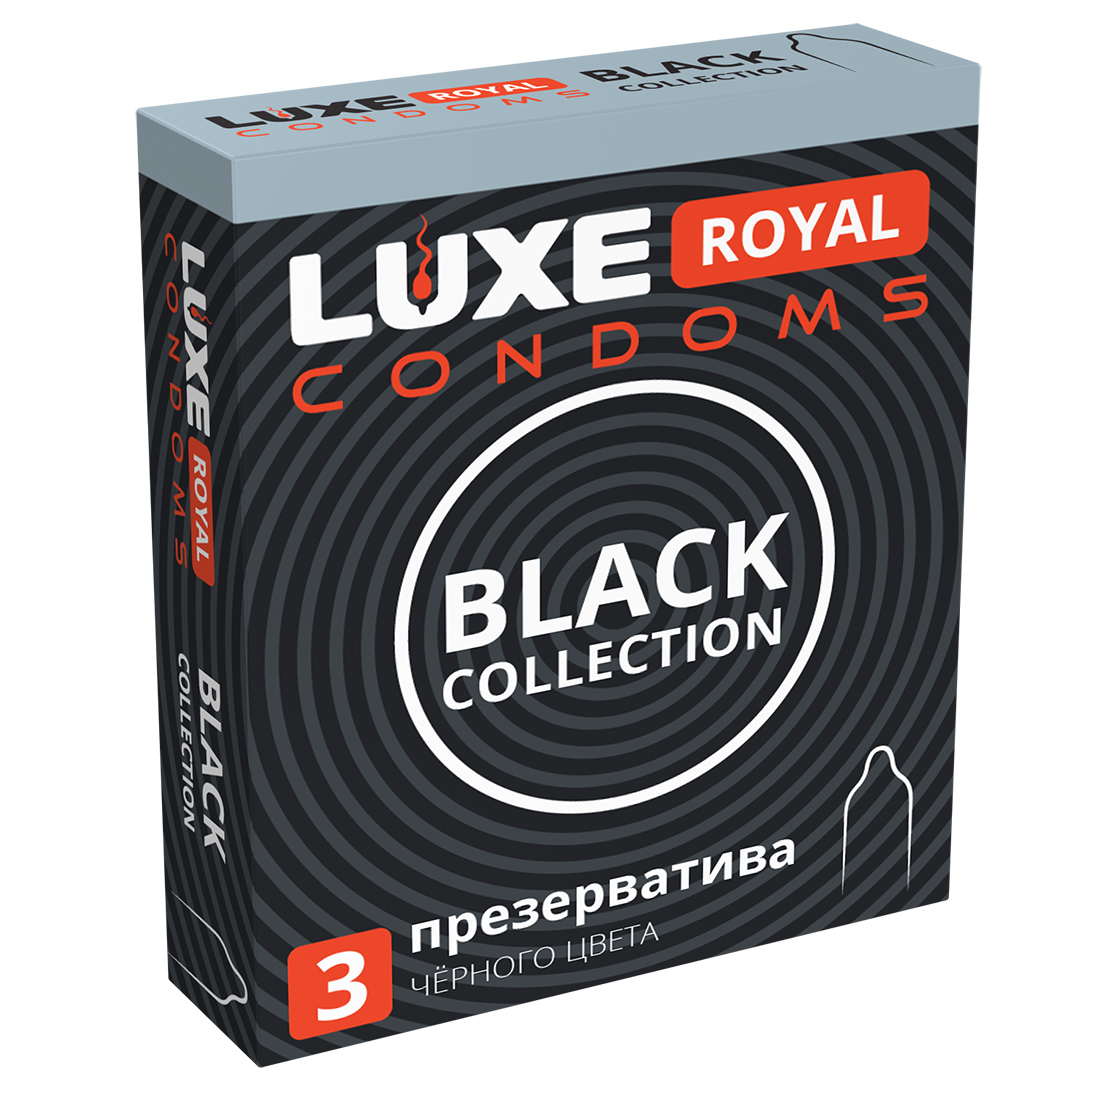 Luxe Royal Black Collection - презервативы, 3 шт. от ero-shop